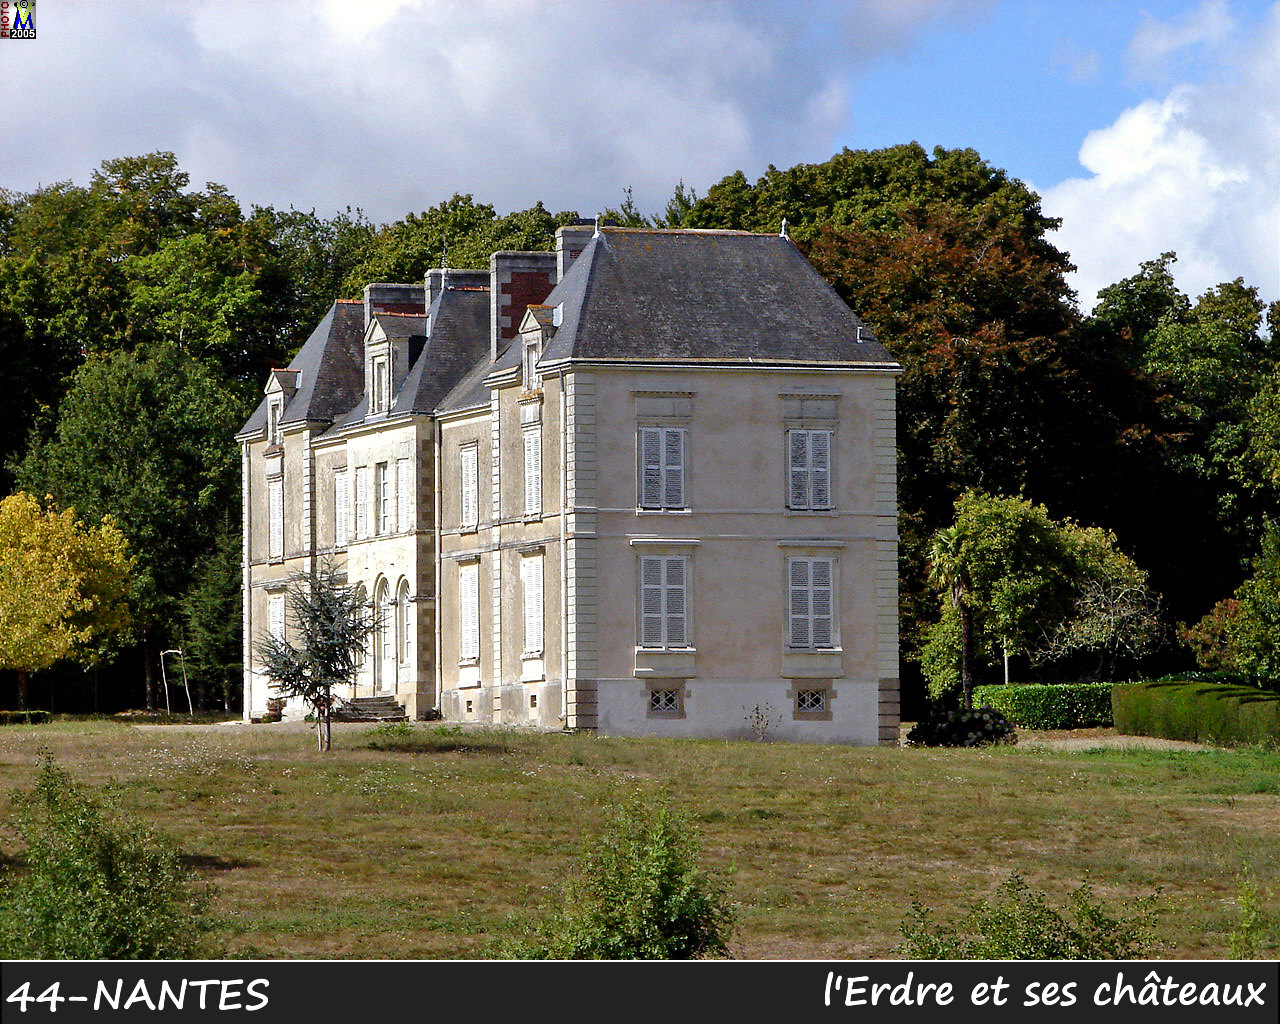 44NANTES_erdre-chateau_116.jpg